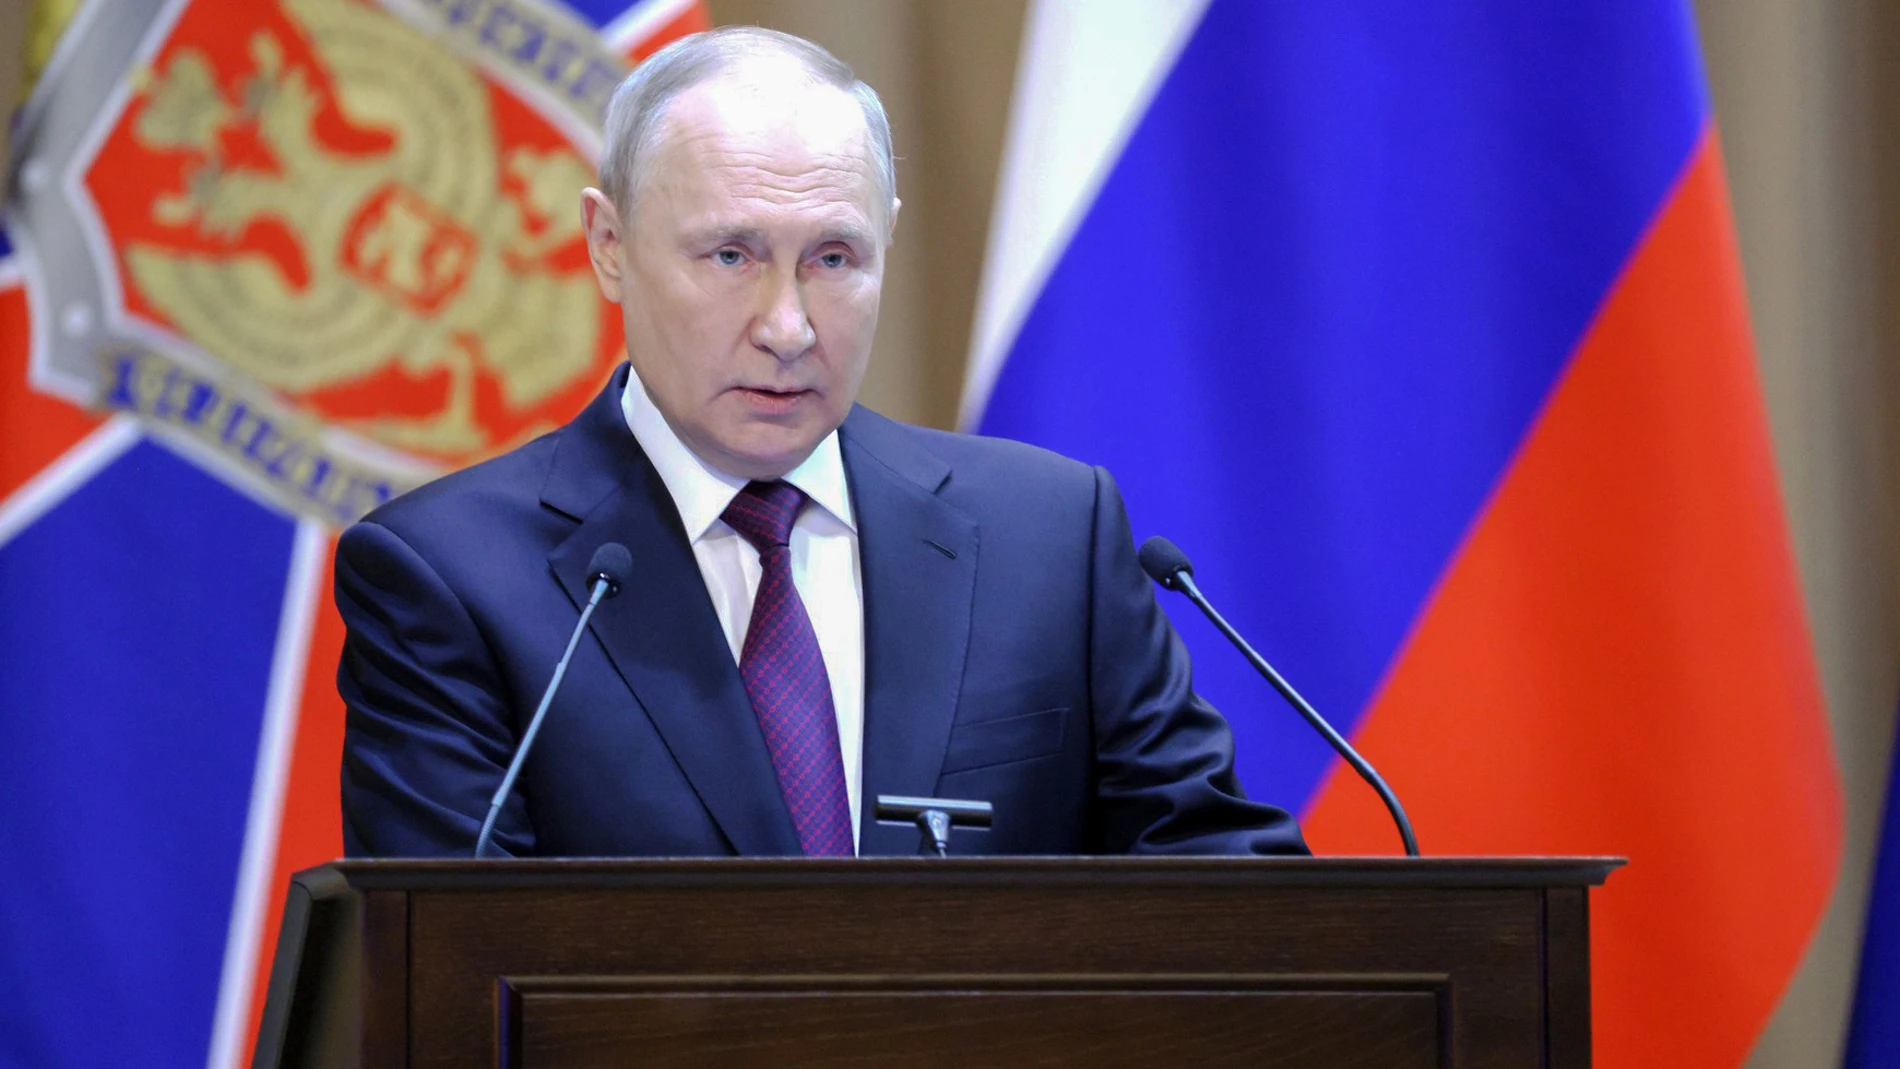 VÍDEO: Bielorrusia.- Putin anuncia un acuerdo con Bielorrusia para el despliegue de armas nucleares tácticas